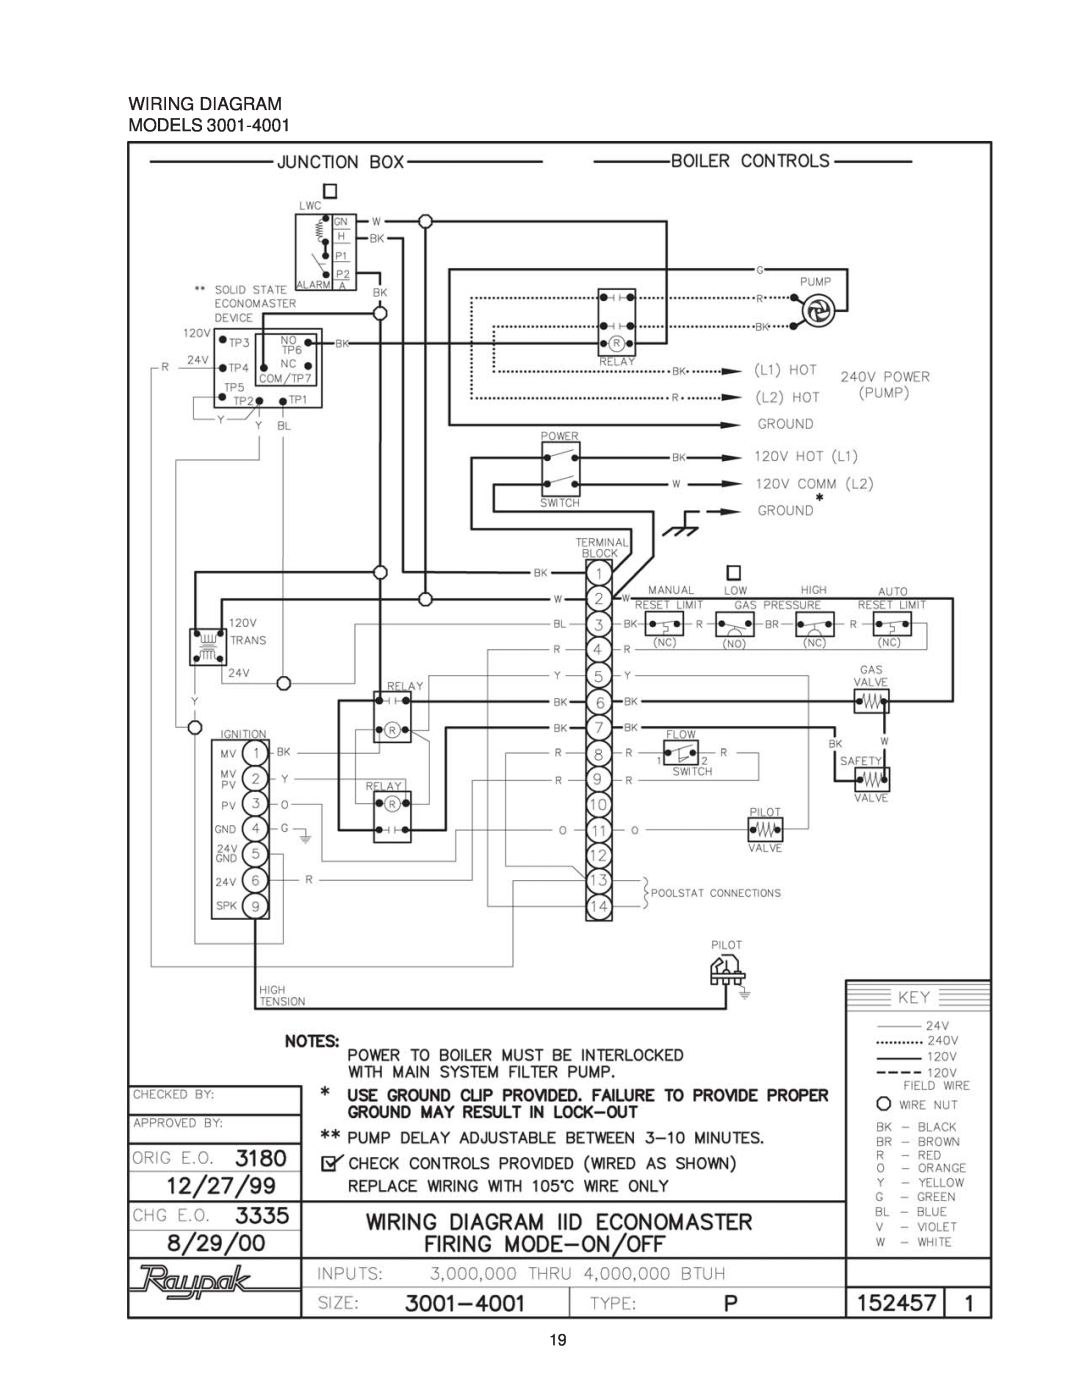 Raypak P-926, P-1826, P-2100, P-4001, 1287-1758, 2100-4001, P926, P1826, P2100, P4001 manual Wiring Diagram Models 